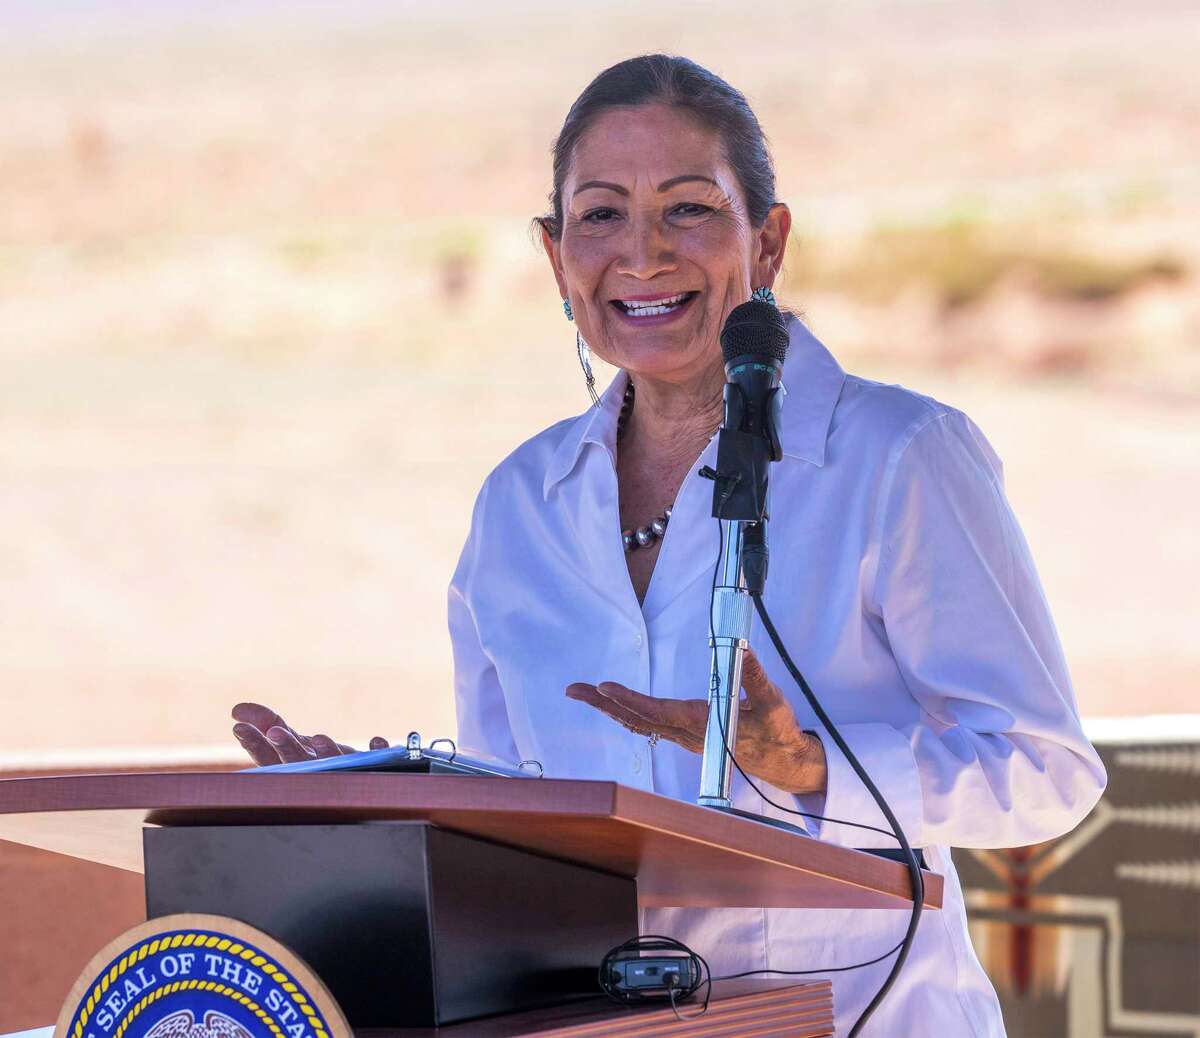 ARCHIVO - La Secretaria del Interior de EE.UU., Deb Haaland, habla después de firmar el acuerdo sobre los derechos federales reservados de agua de los Navajo en Monument Valley, Utah, el viernes 27 de mayo de 2022. Haaland ha dado positivo en la prueba de COVID-19 el miércoles 1 de junio de 2022 y tiene síntomas leves. El Departamento del Interior dijo que Haaland está aislada en Nevada, donde participó el martes en una mesa redonda sobre la producción de energía limpia en tierras públicas. (Rick Egan/The Salt Lake Tribune vía AP, Archivo)